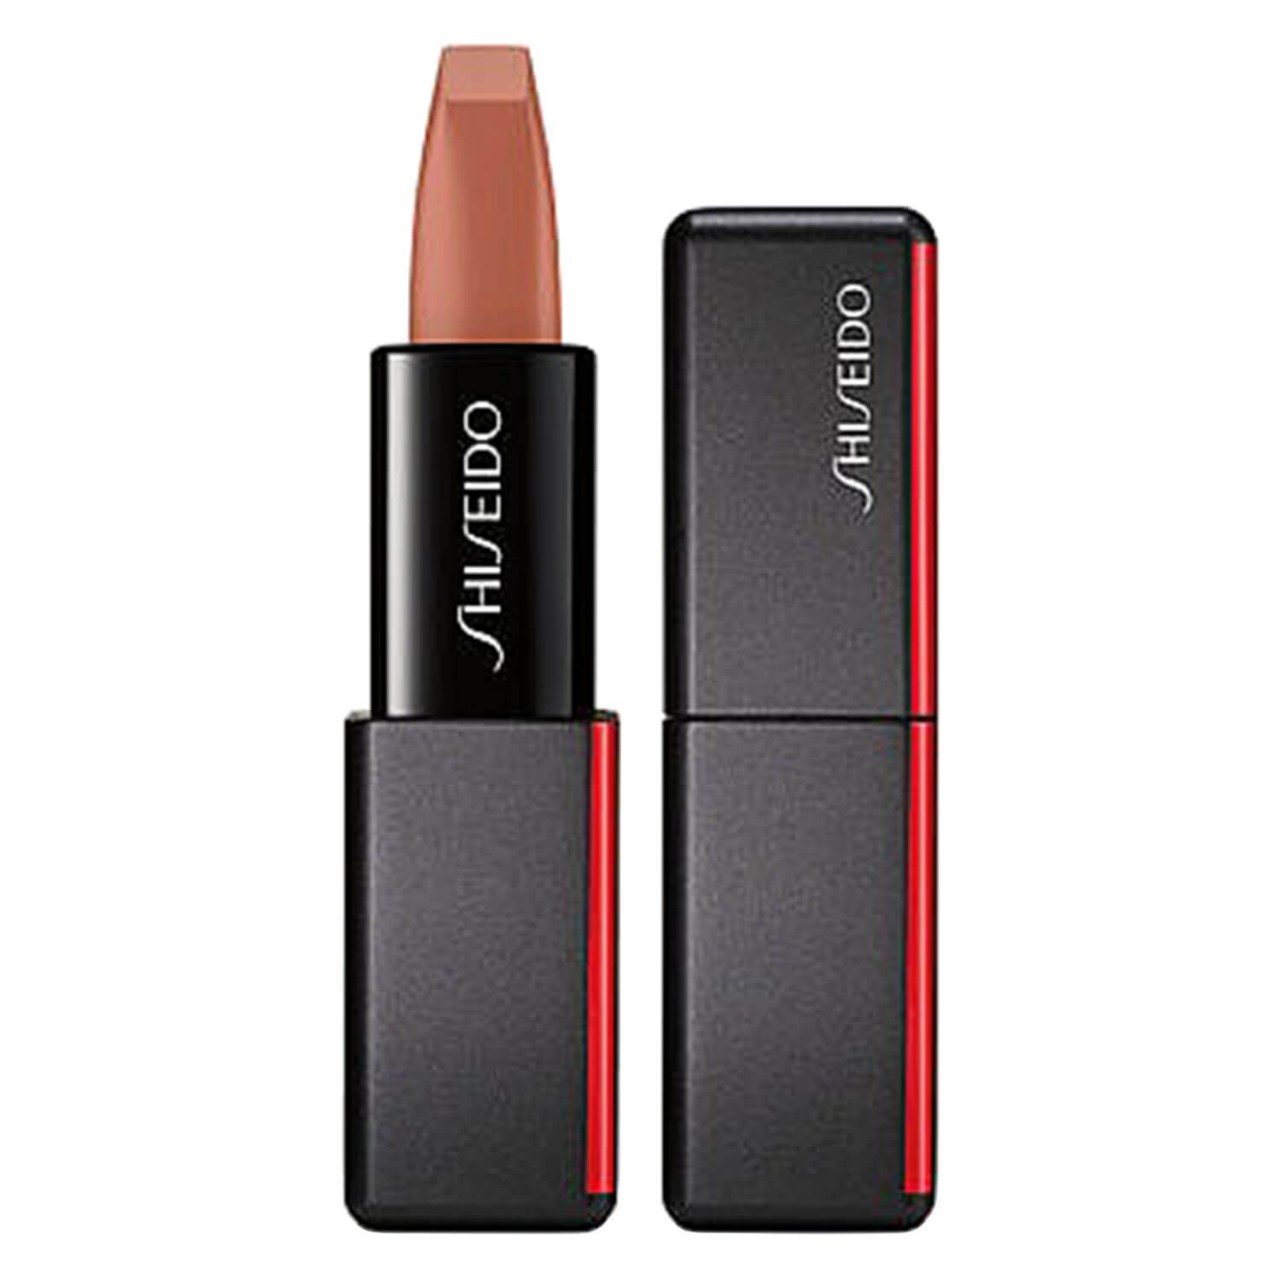 ModernMatte Powder Lipstick - Thigh High 504 von Shiseido